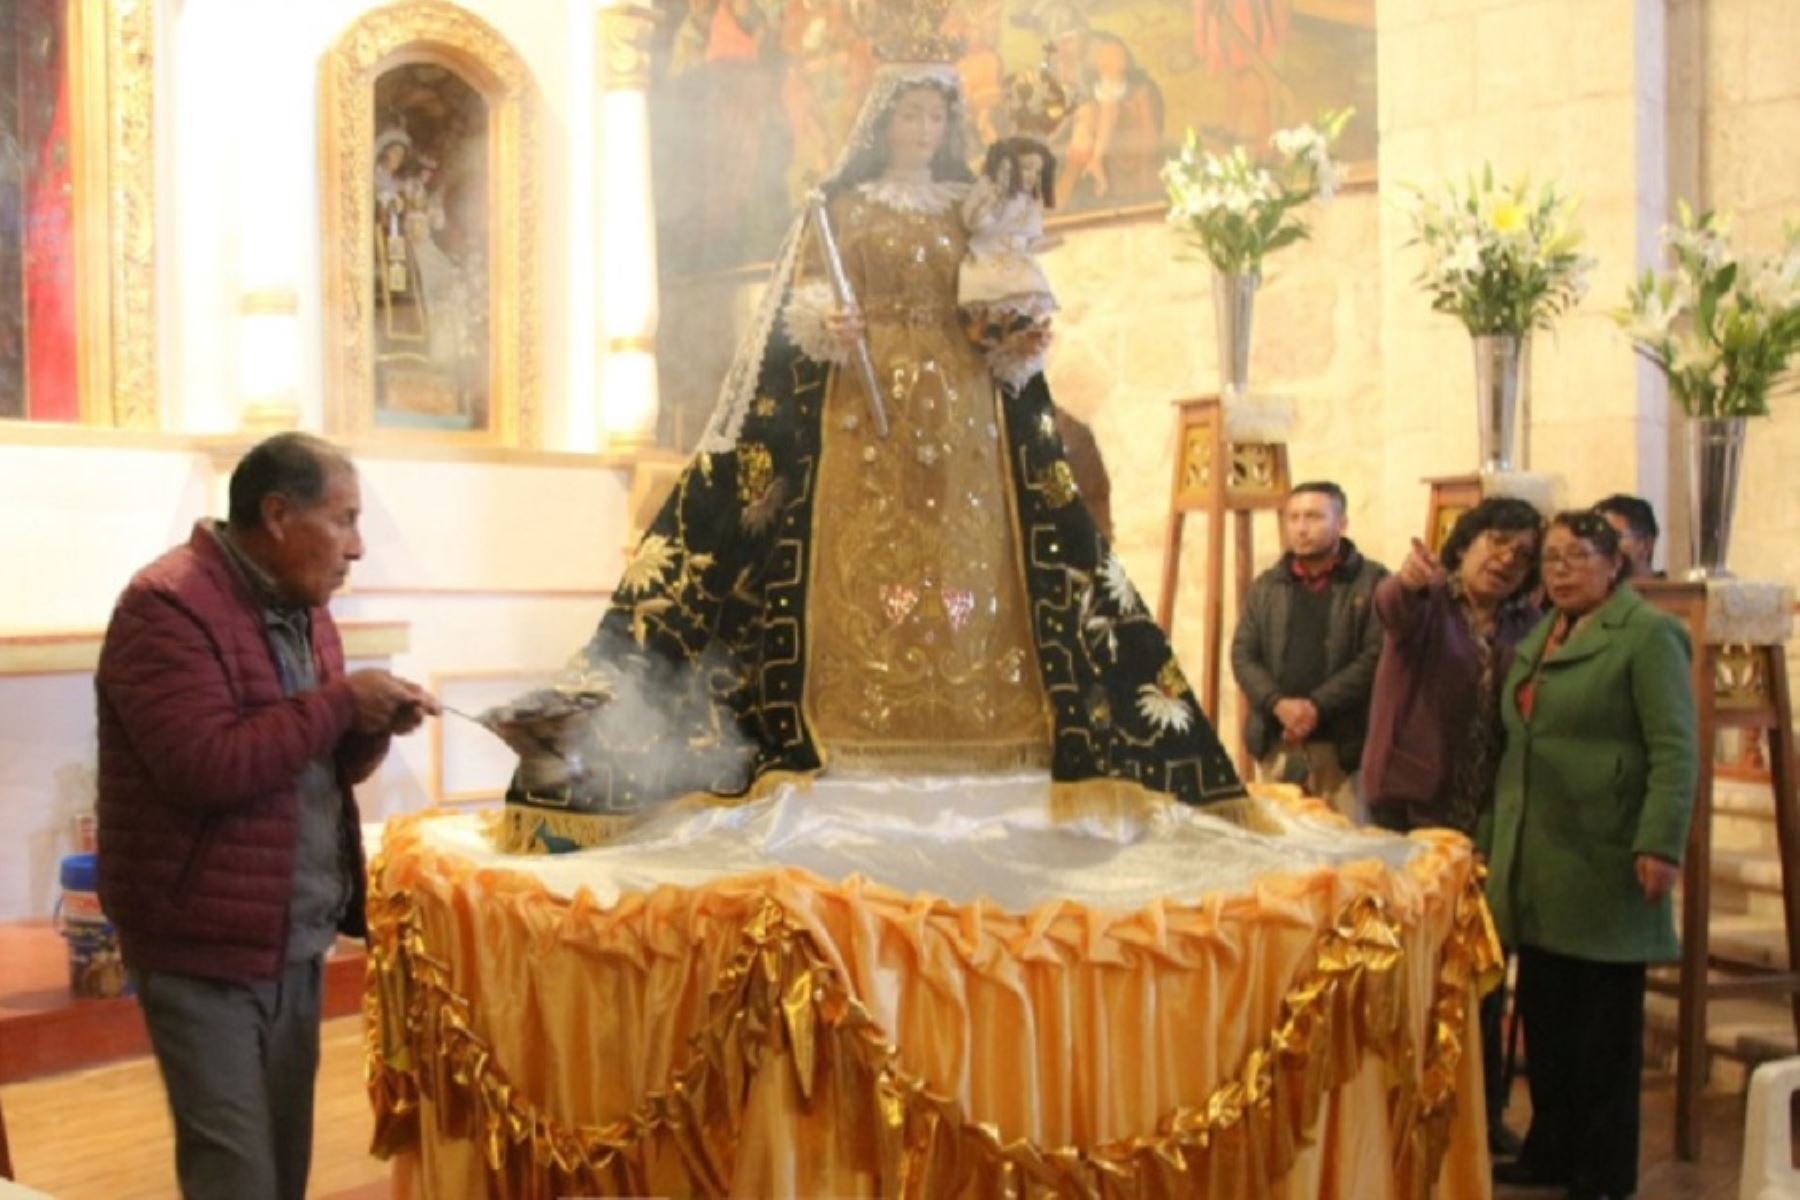 Los carnavales en la provincia puneña de Melgar, inició con el tradicional Taripakuy a la Virgen de Altagracia, el ritual ancestral que revive el sincretismo de la religión andina y la católica, en señal de agradecimiento y reciprocidad con los elementos simbólicos de la naturaleza.